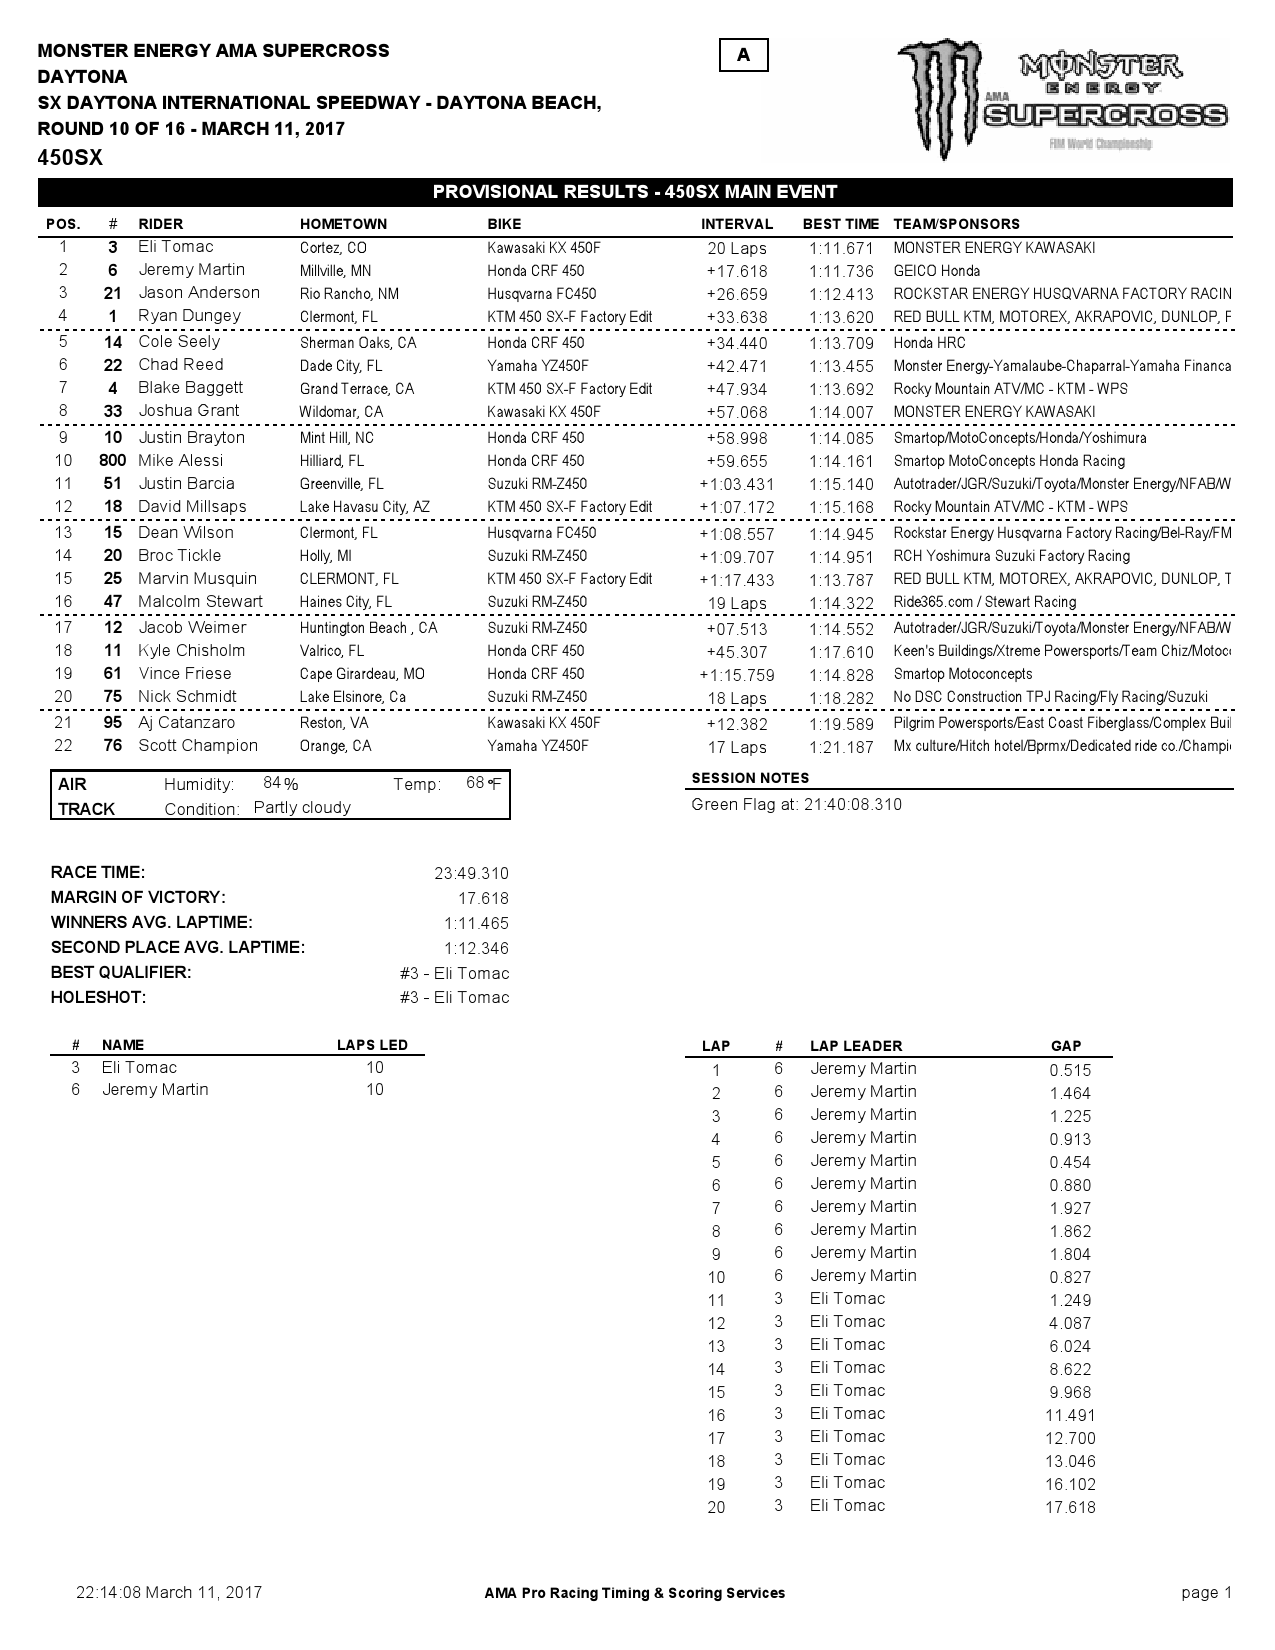 Результаты 10 этапа Чемпионата Мира/AMA по суперкроссу 450SX - Дайтона